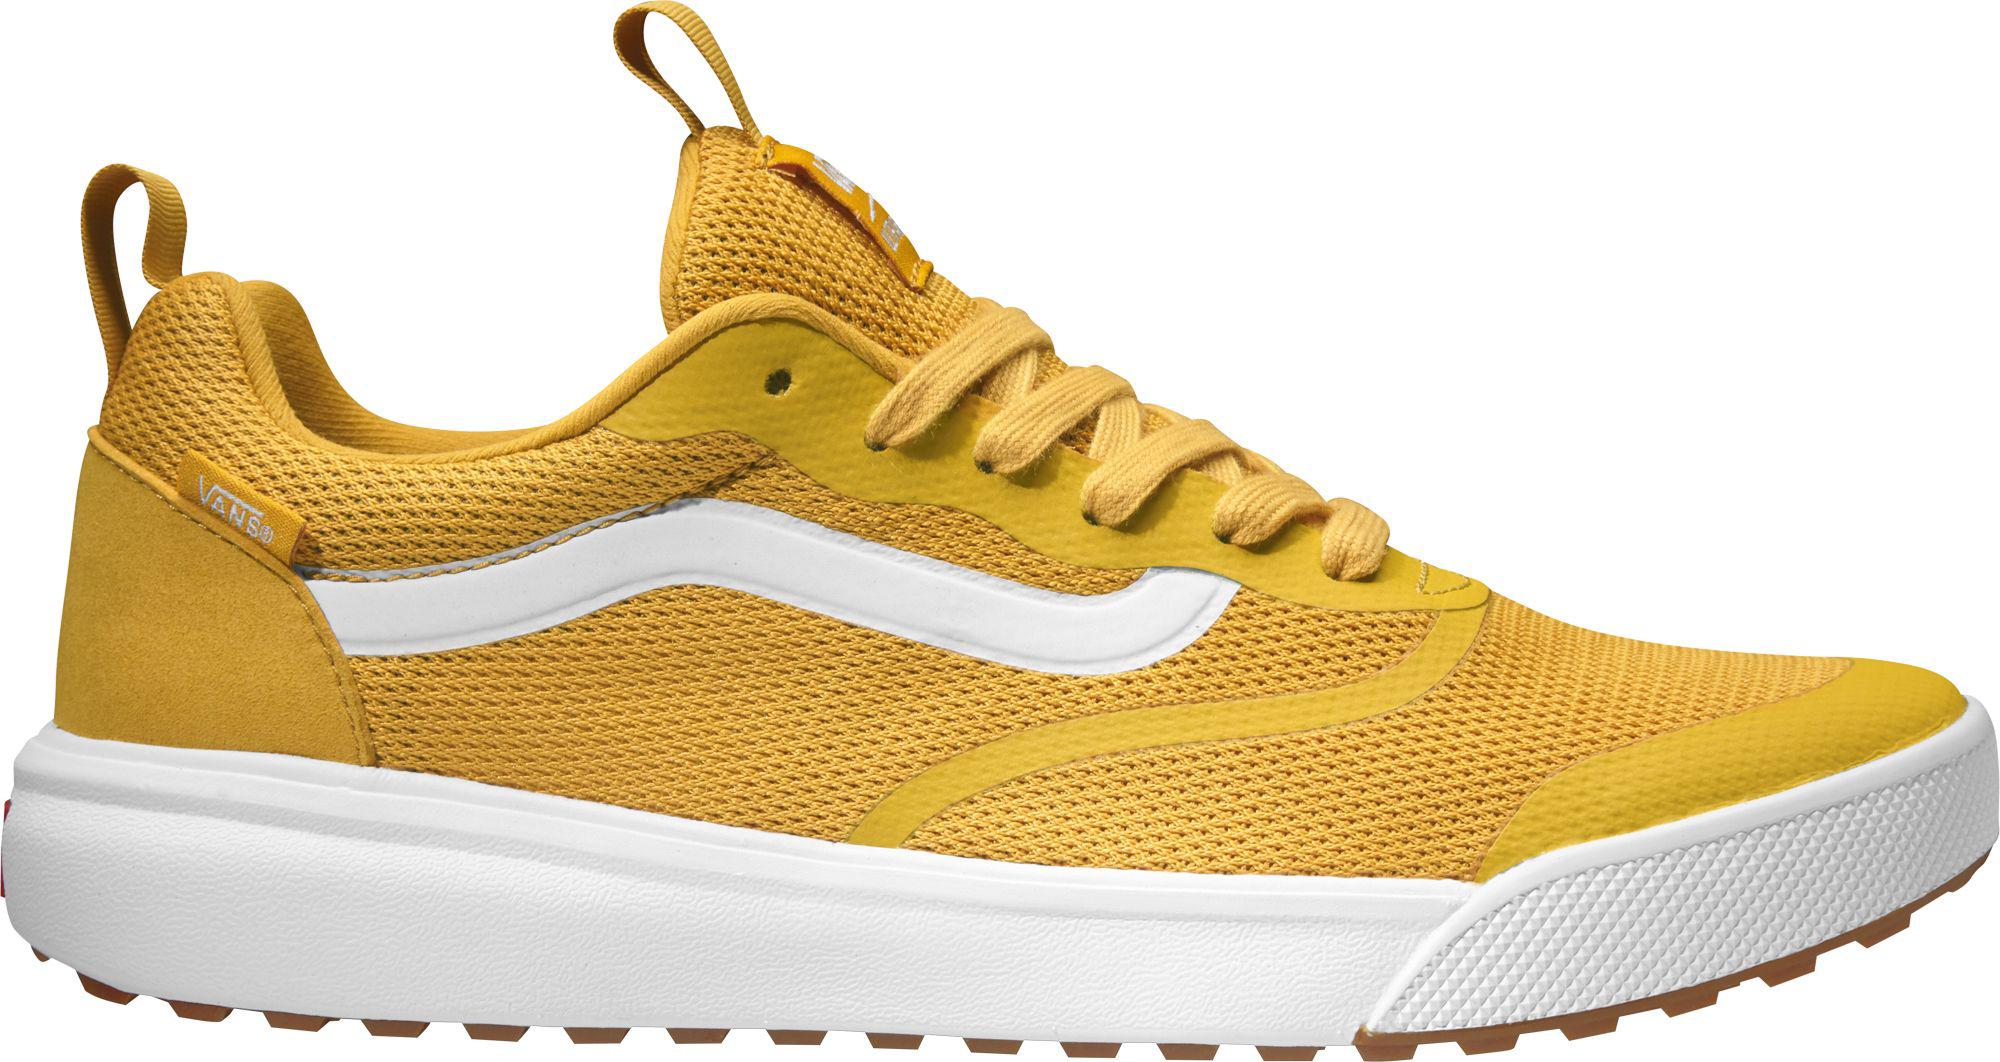 van shoes yellow